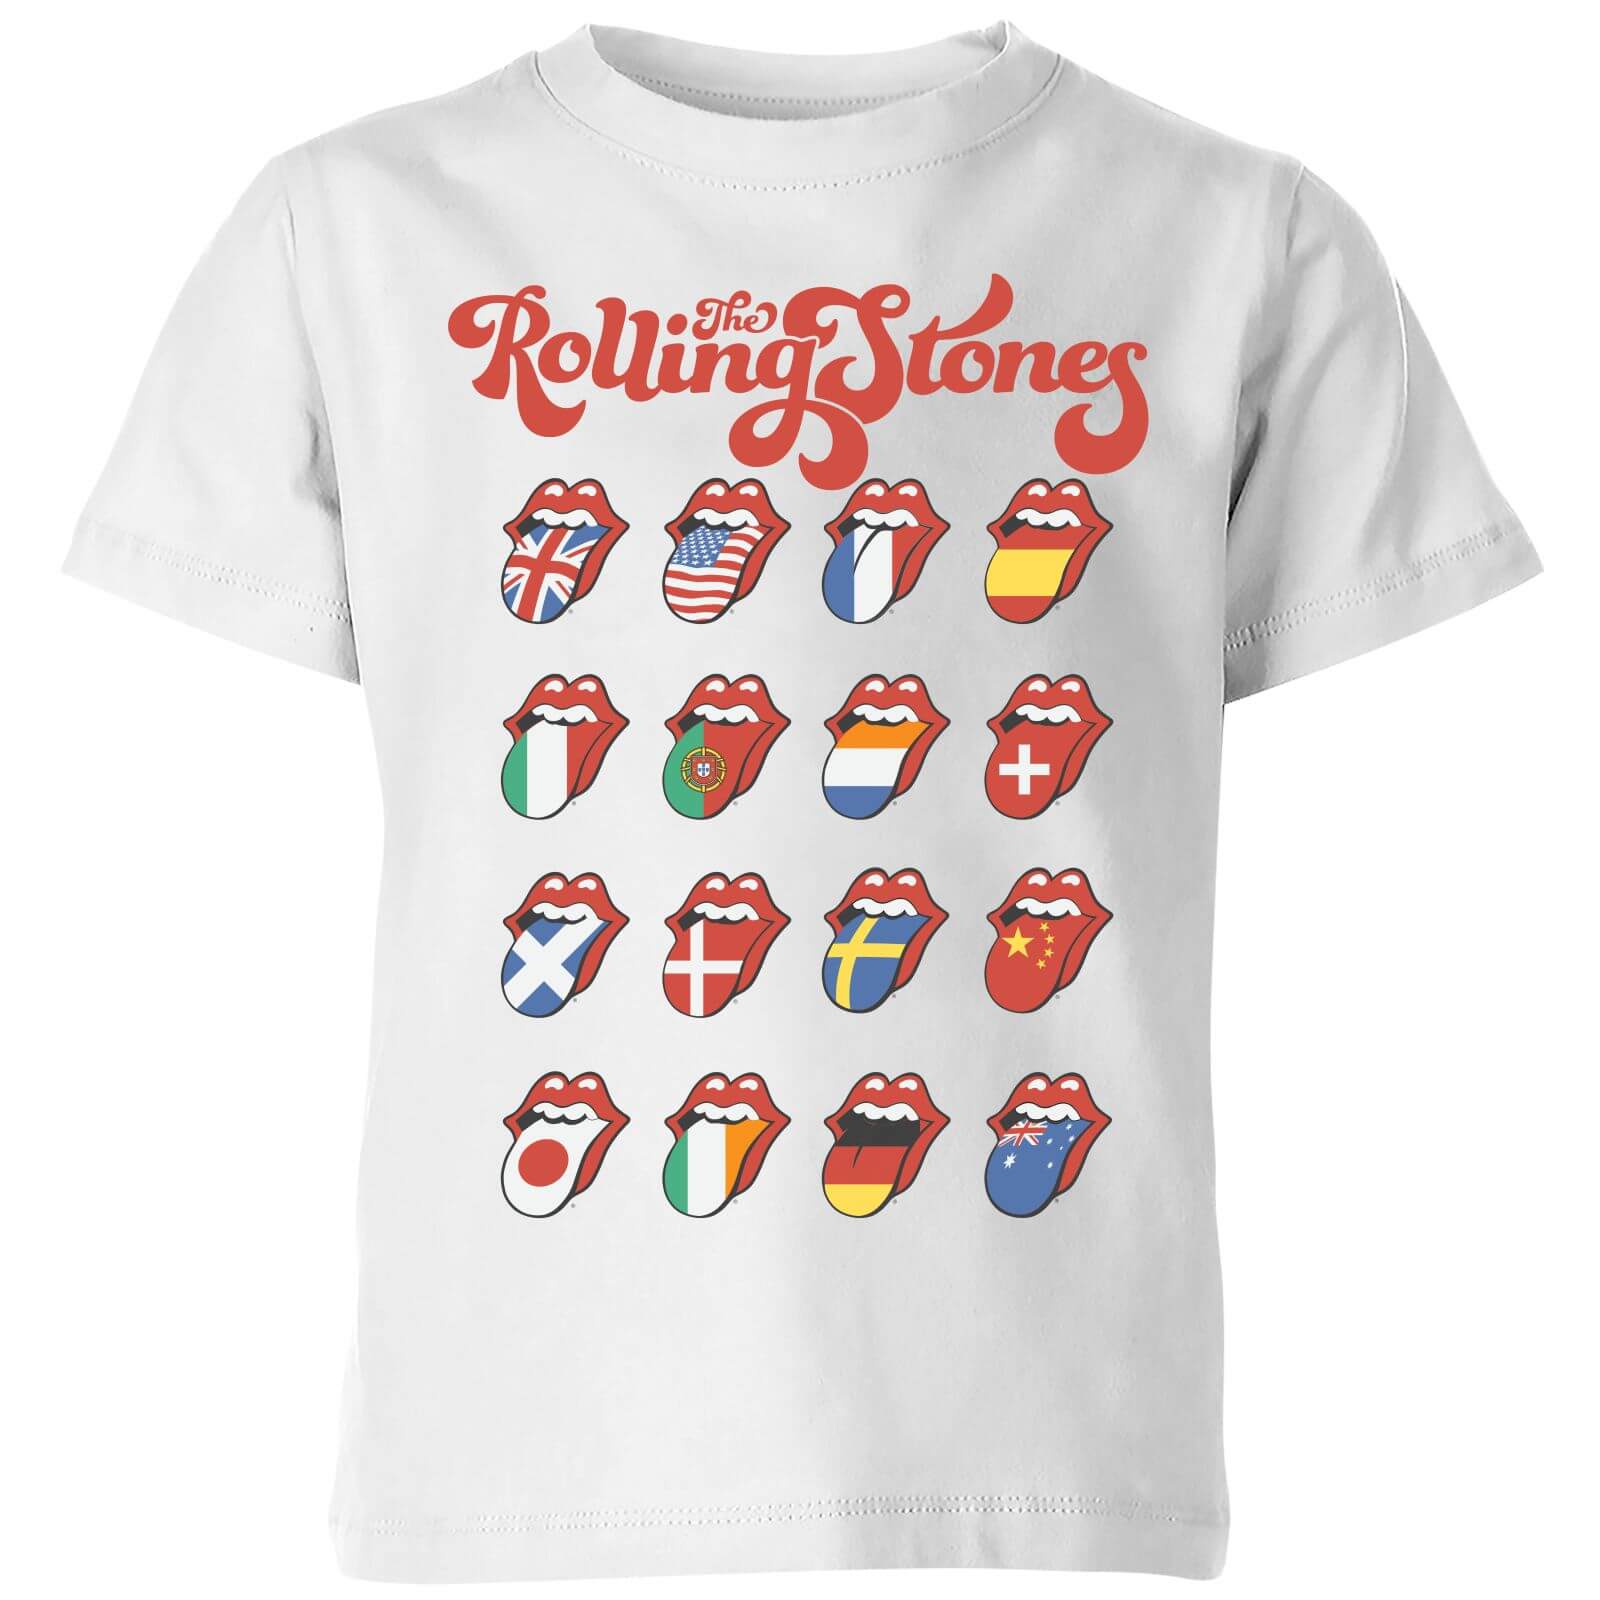 Rolling Stones International Licks Kids' T-Shirt - White - 11-12 Years - White